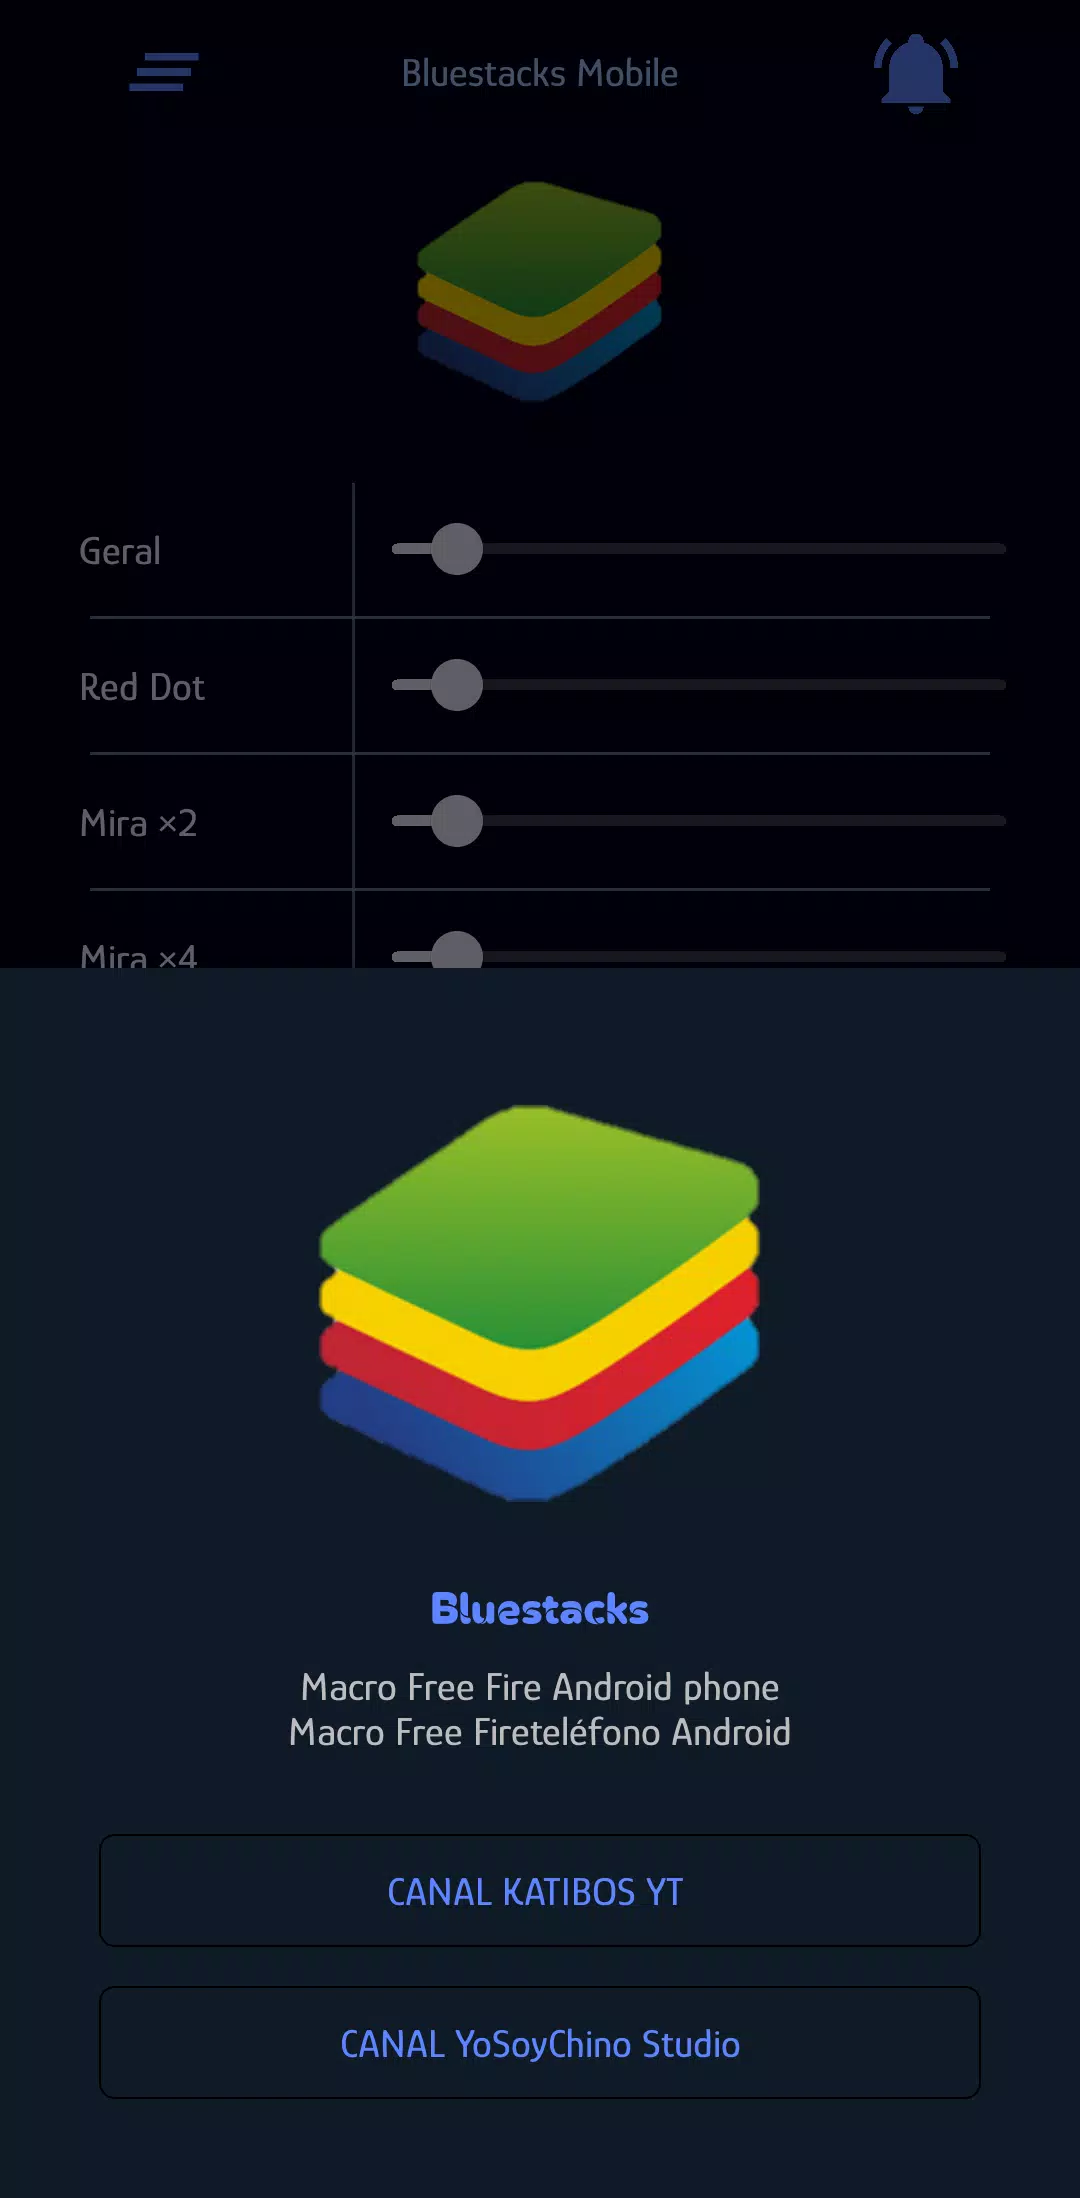 Mods para Jogos Mobile no BlueStacks X - Como fazer Mods para seus